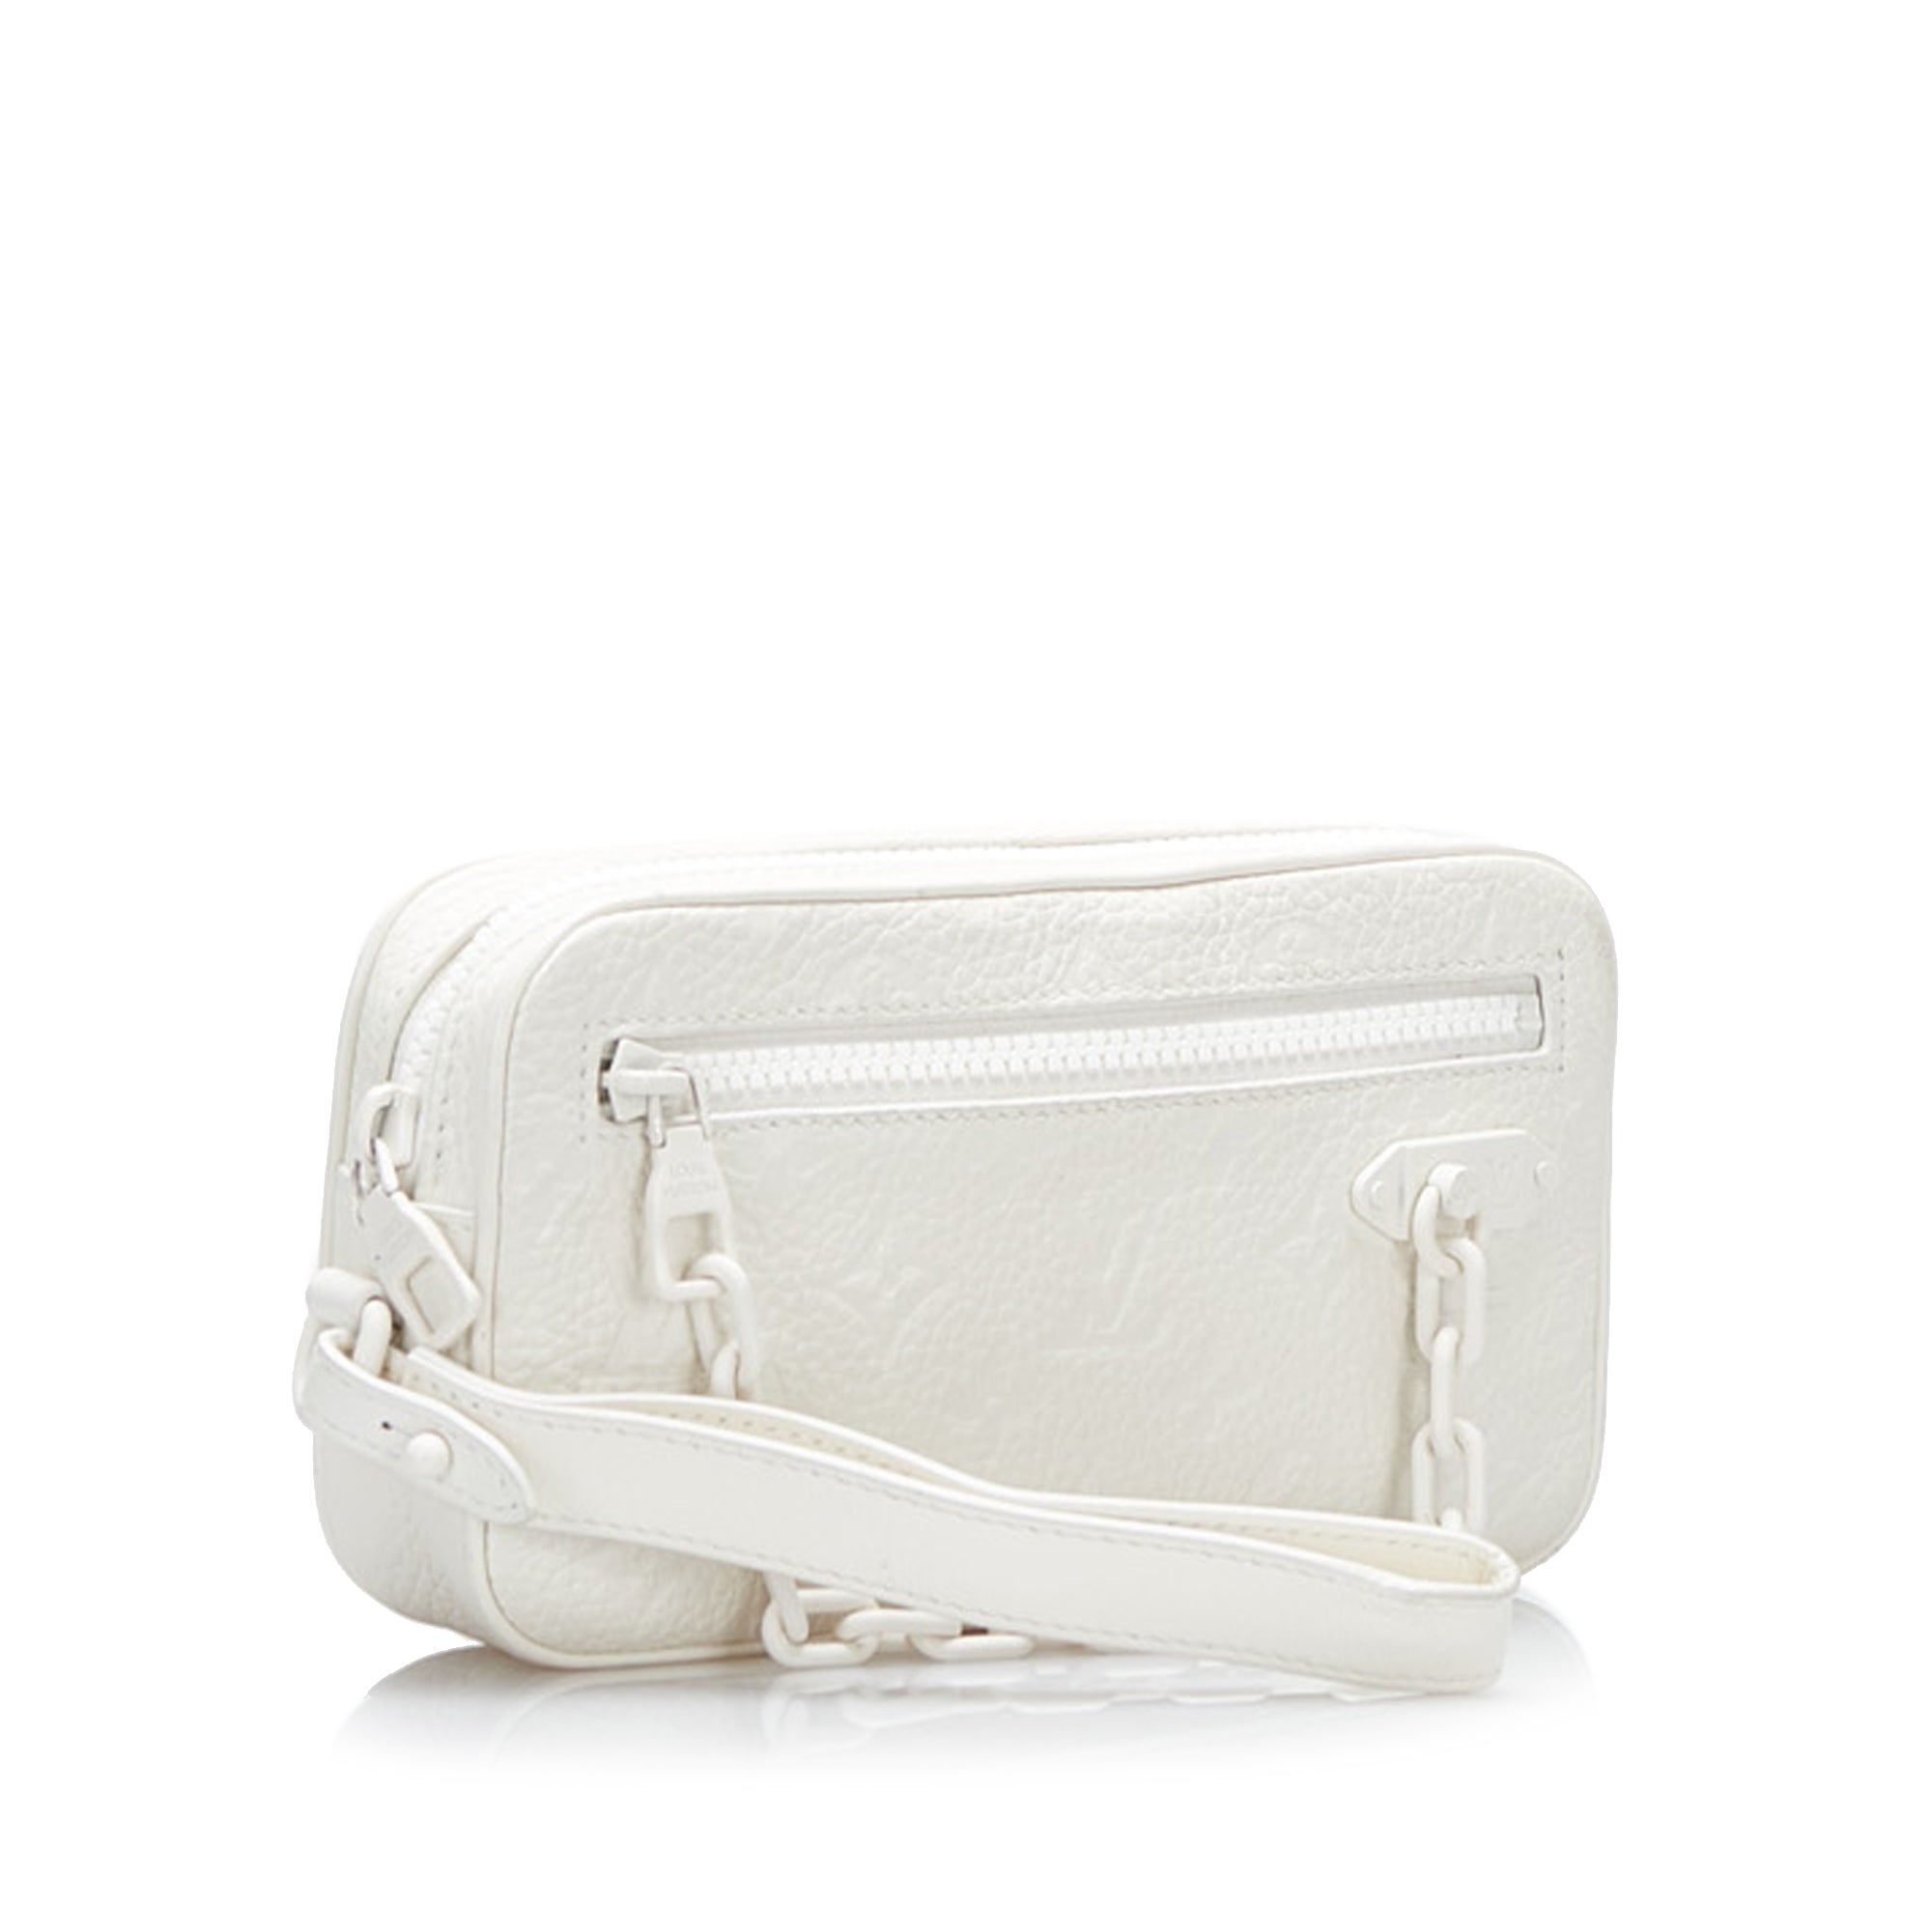 Louis Vuitton Pochette Volga Monogram White in Taurillon Leather